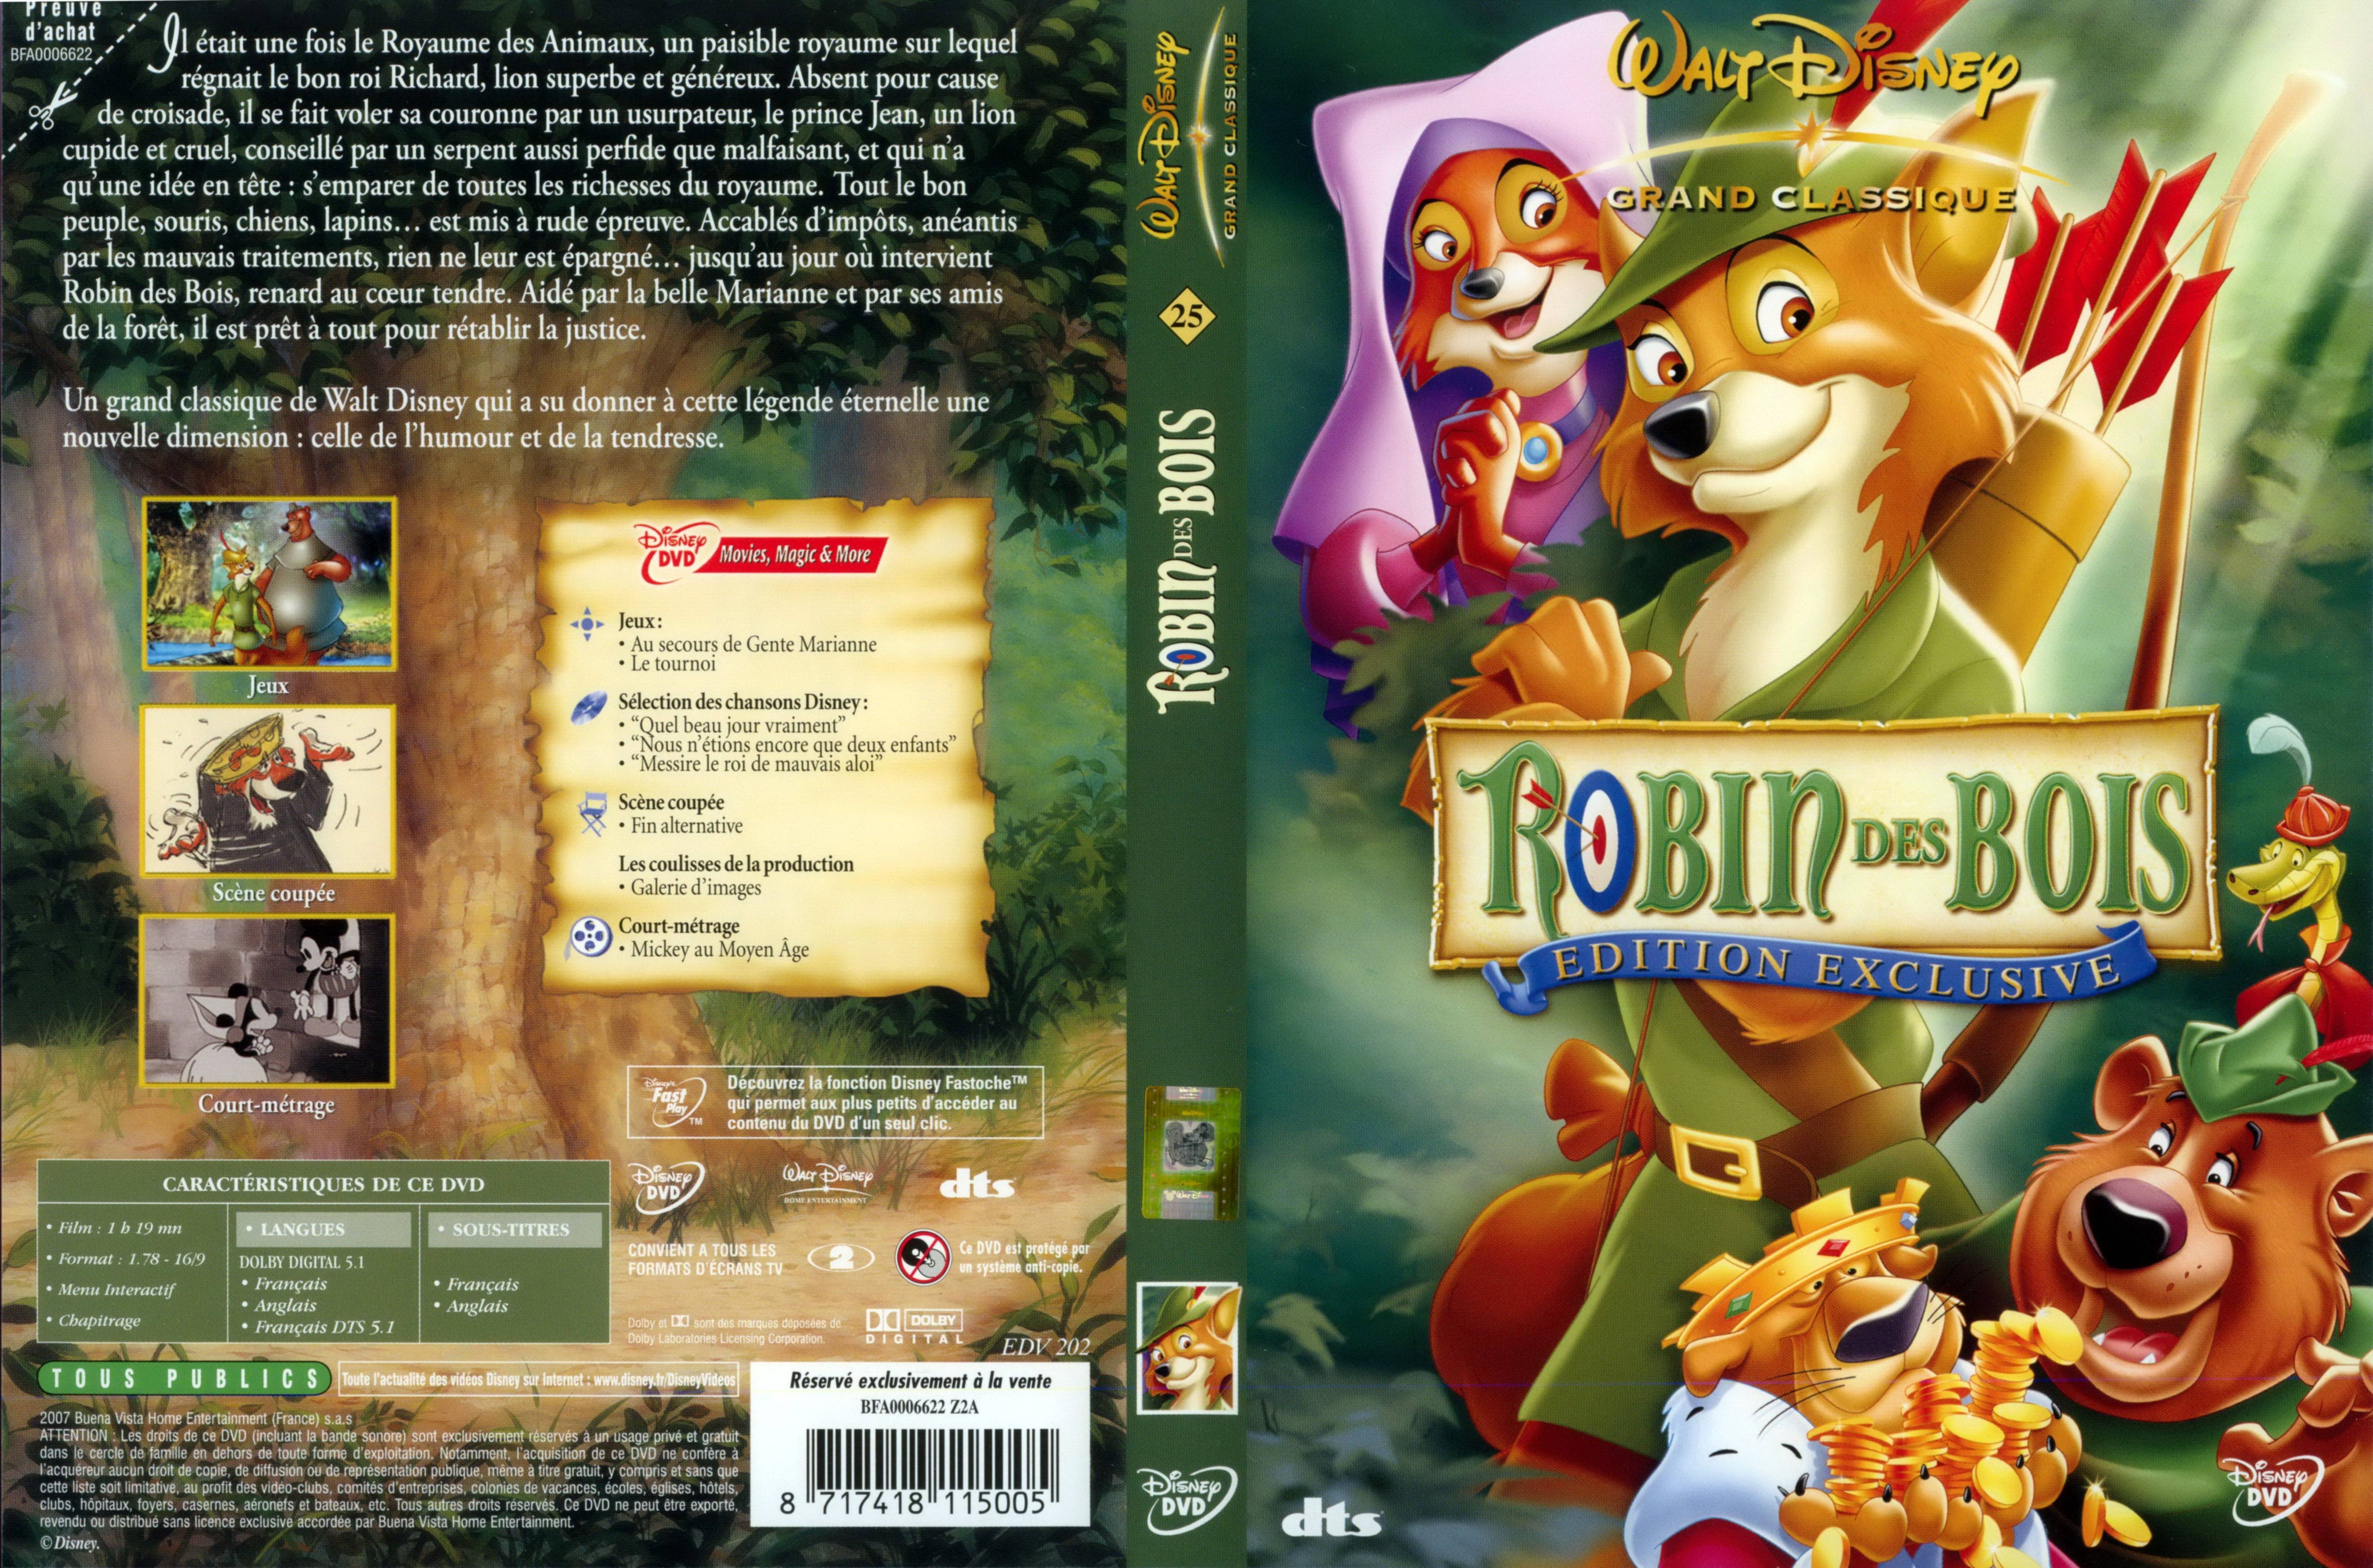 Jaquette DVD Robin des bois v2